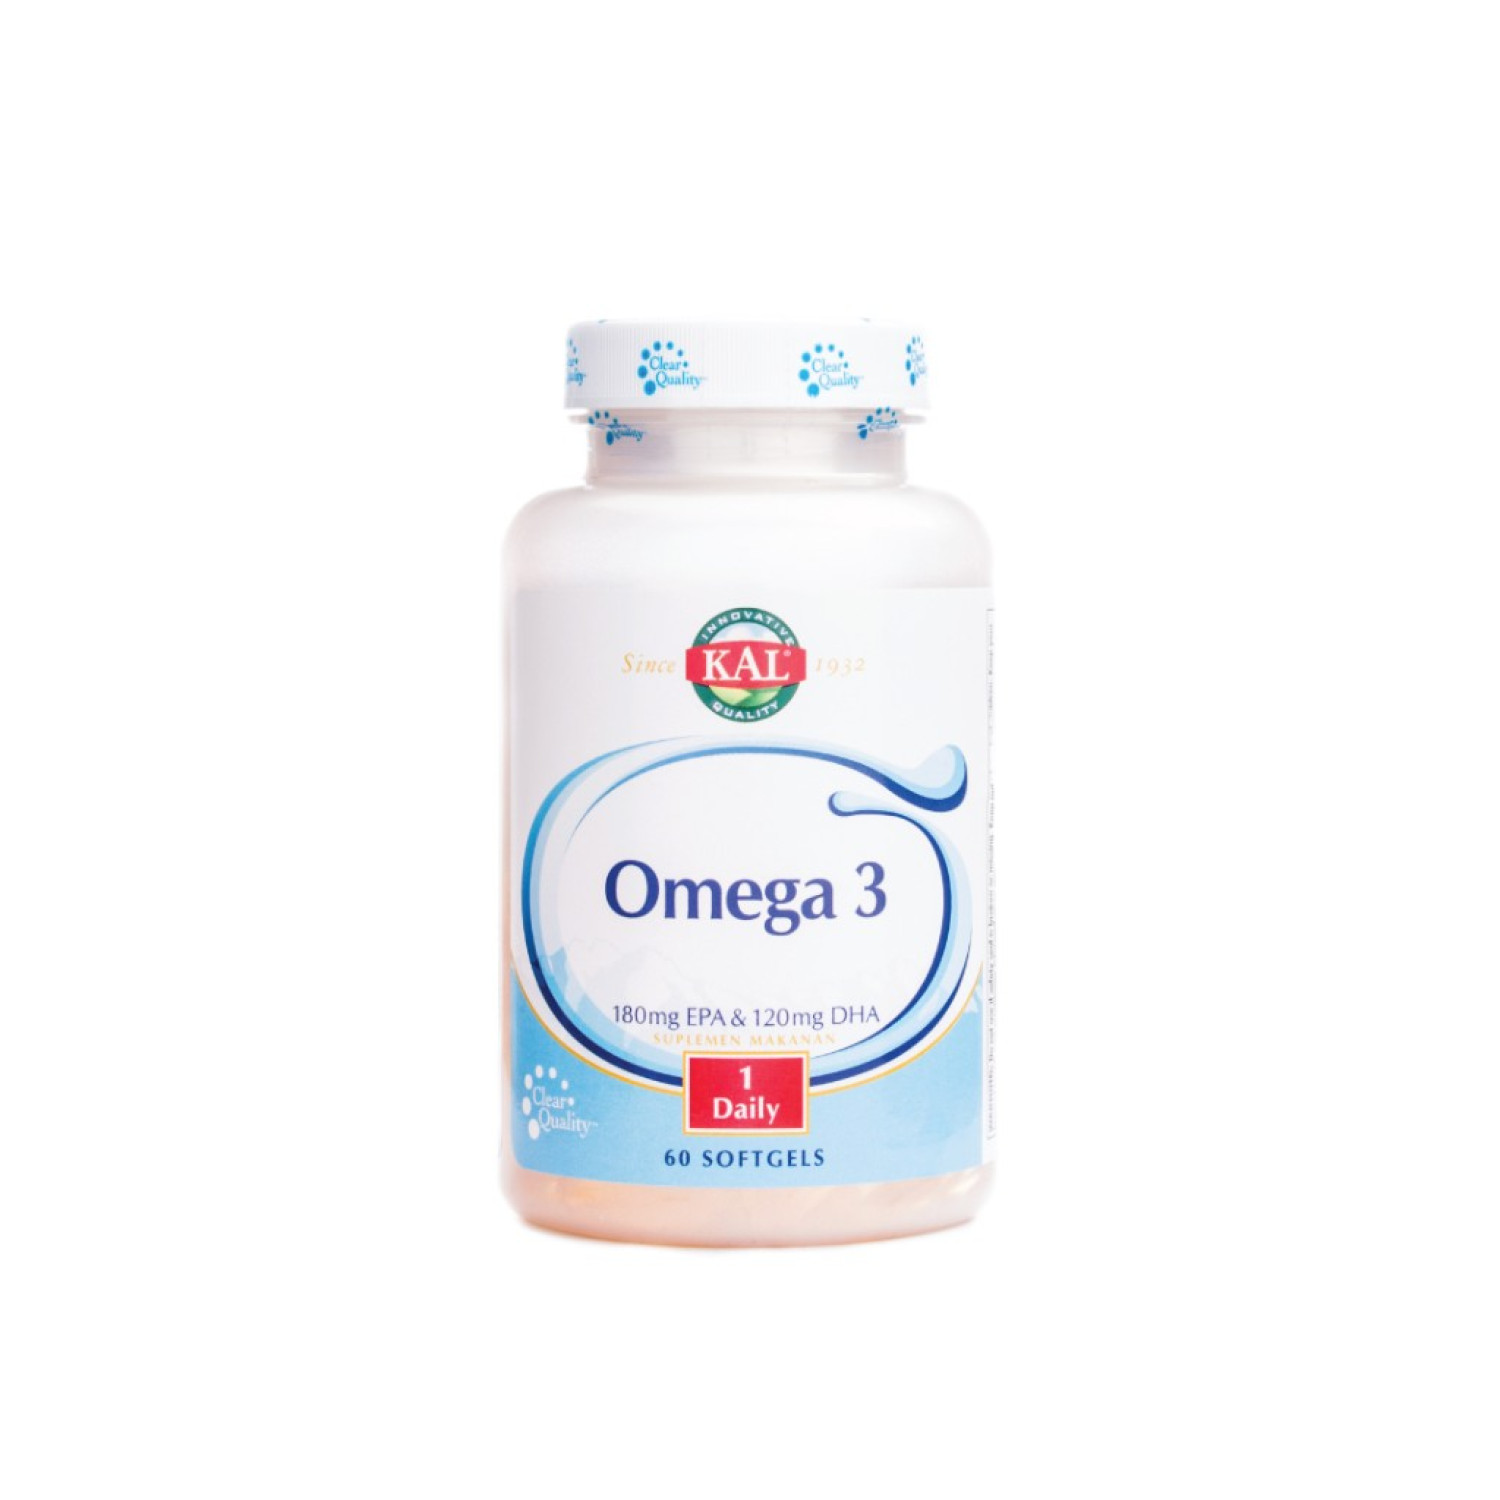 kal-omega-3-60-softgels-65447099b6a55.jpeg